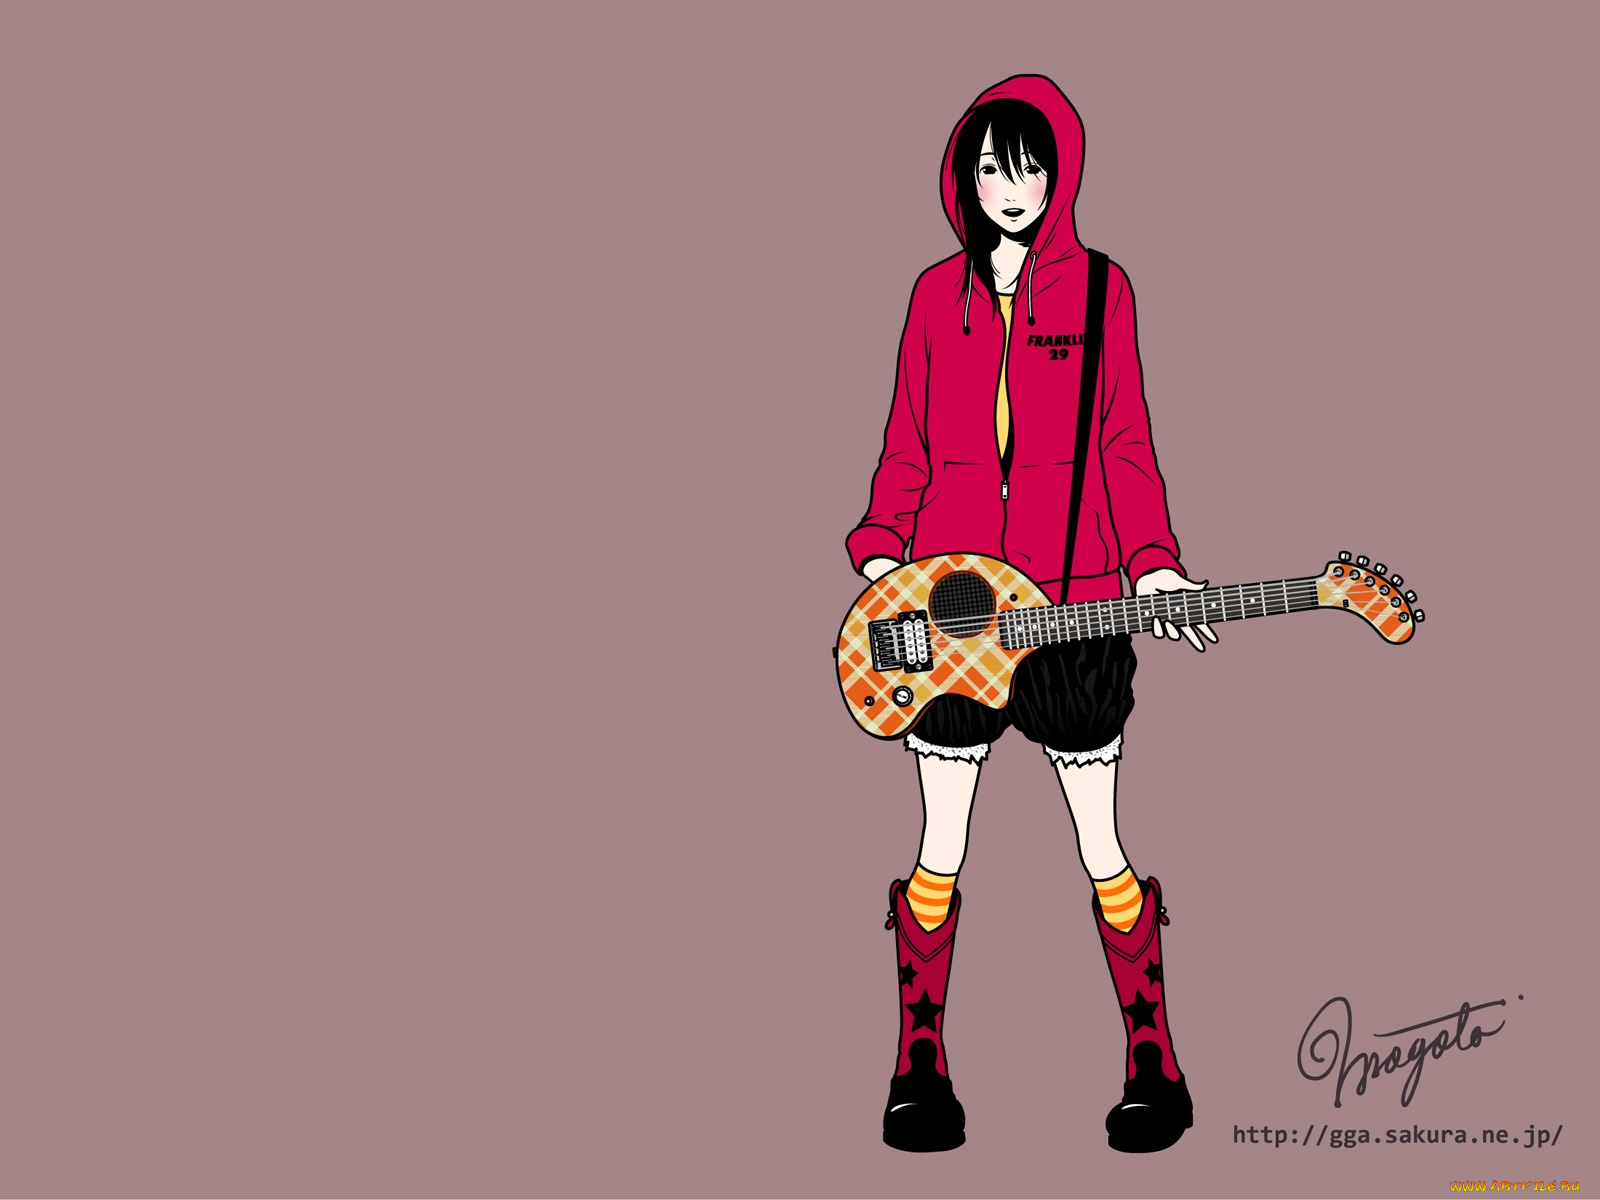 аниме, guitar, girls, addiction